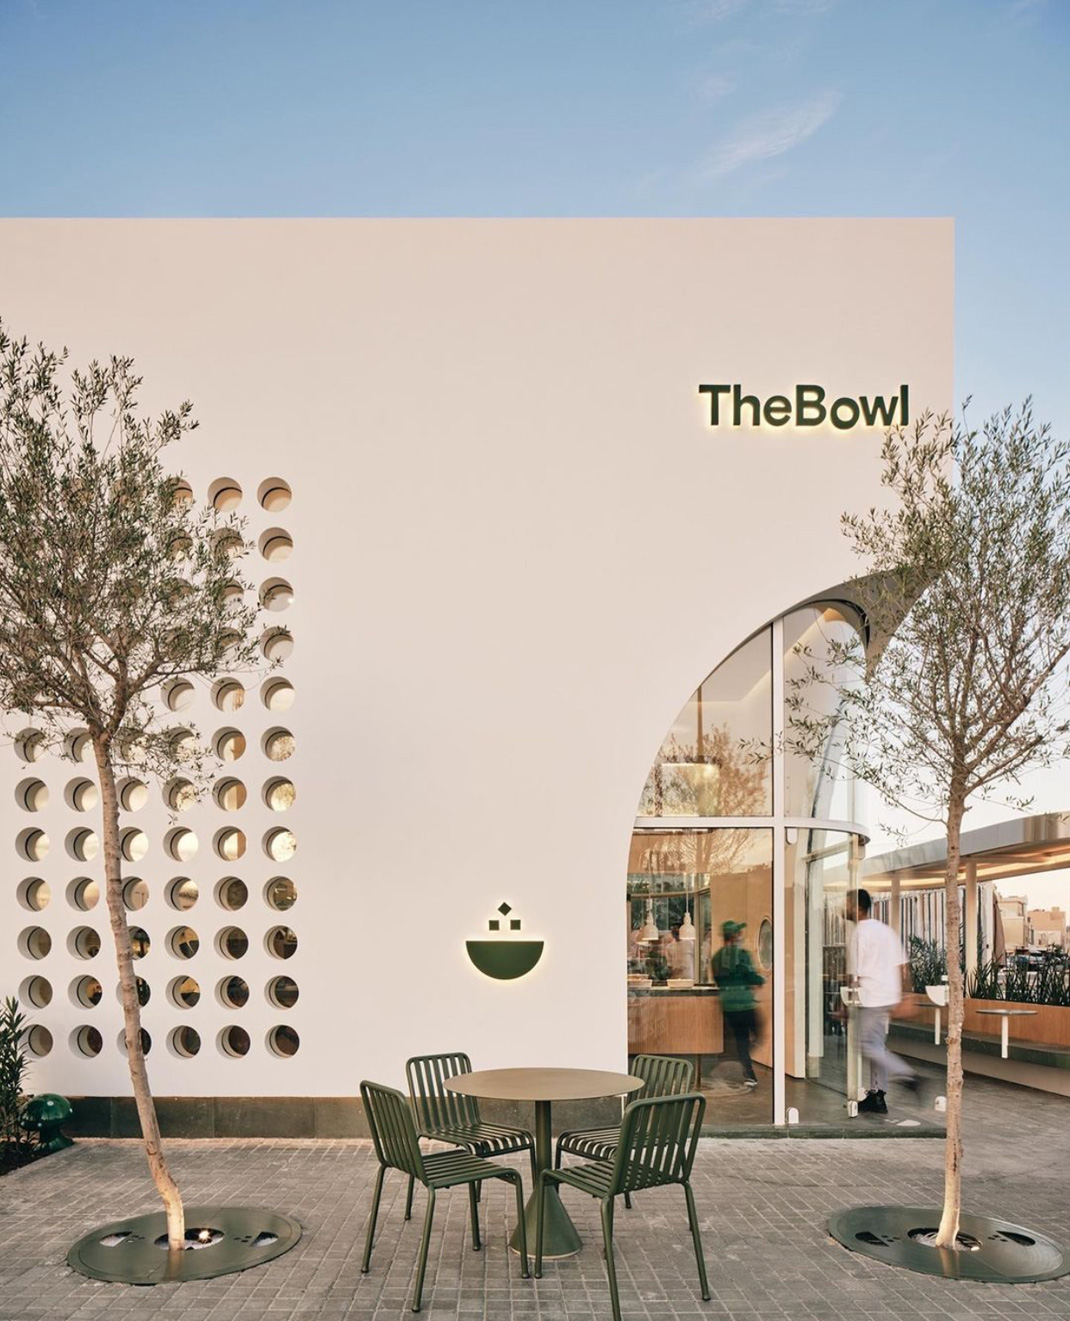 咖啡店The Bowl 韩国 咖啡店 街铺 阵列 logo设计 vi设计 空间设计